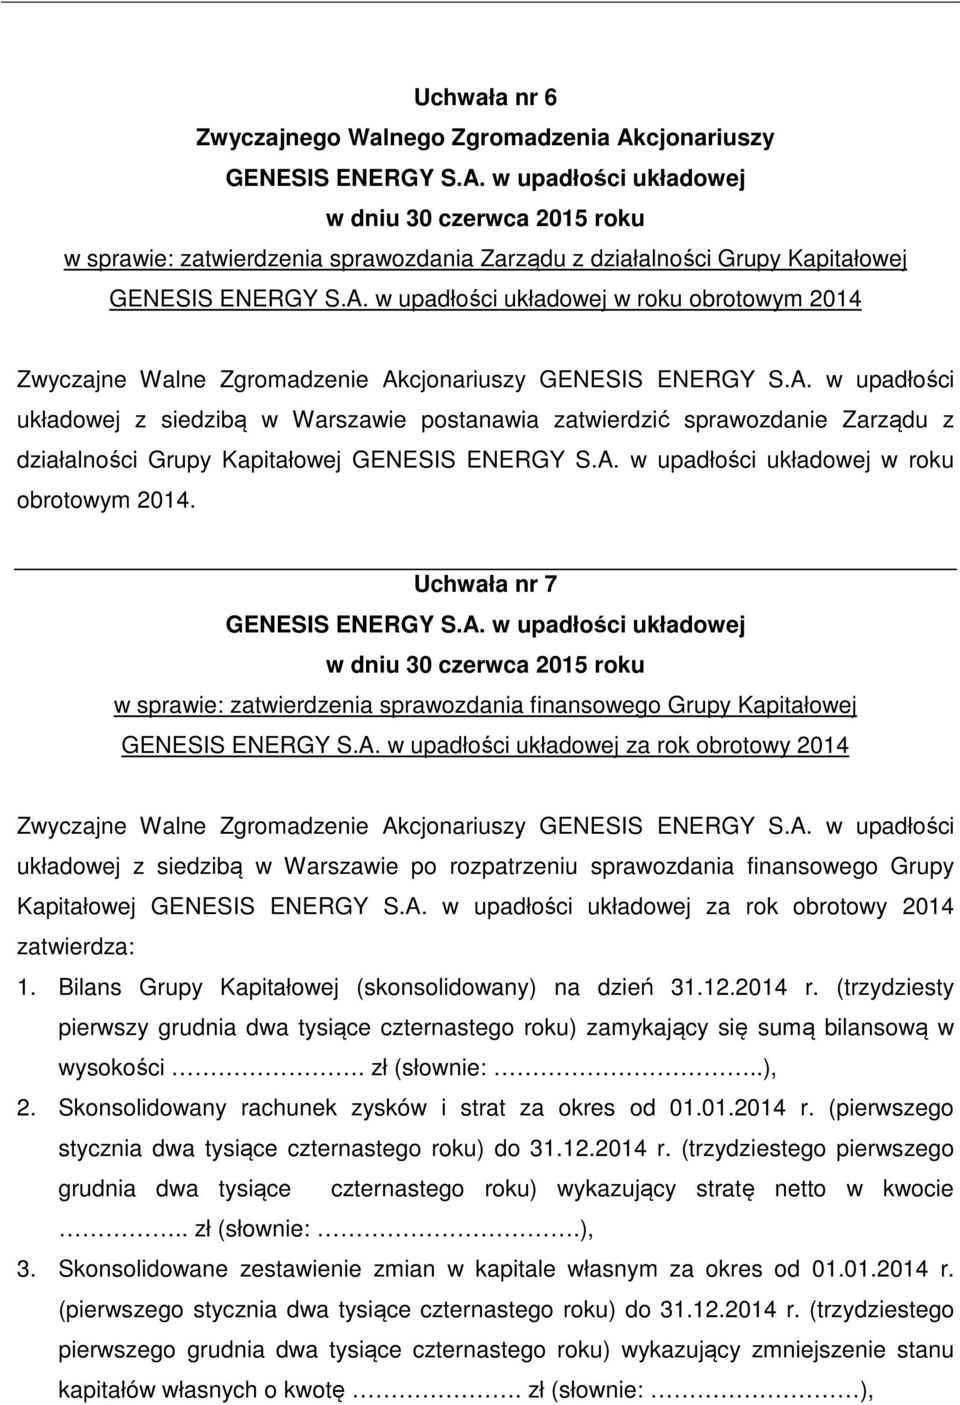 Uchwała nr 7 w sprawie: zatwierdzenia sprawozdania finansowego Grupy Kapitałowej za rok obrotowy 2014 układowej z siedzibą w Warszawie po rozpatrzeniu sprawozdania finansowego Grupy Kapitałowej za